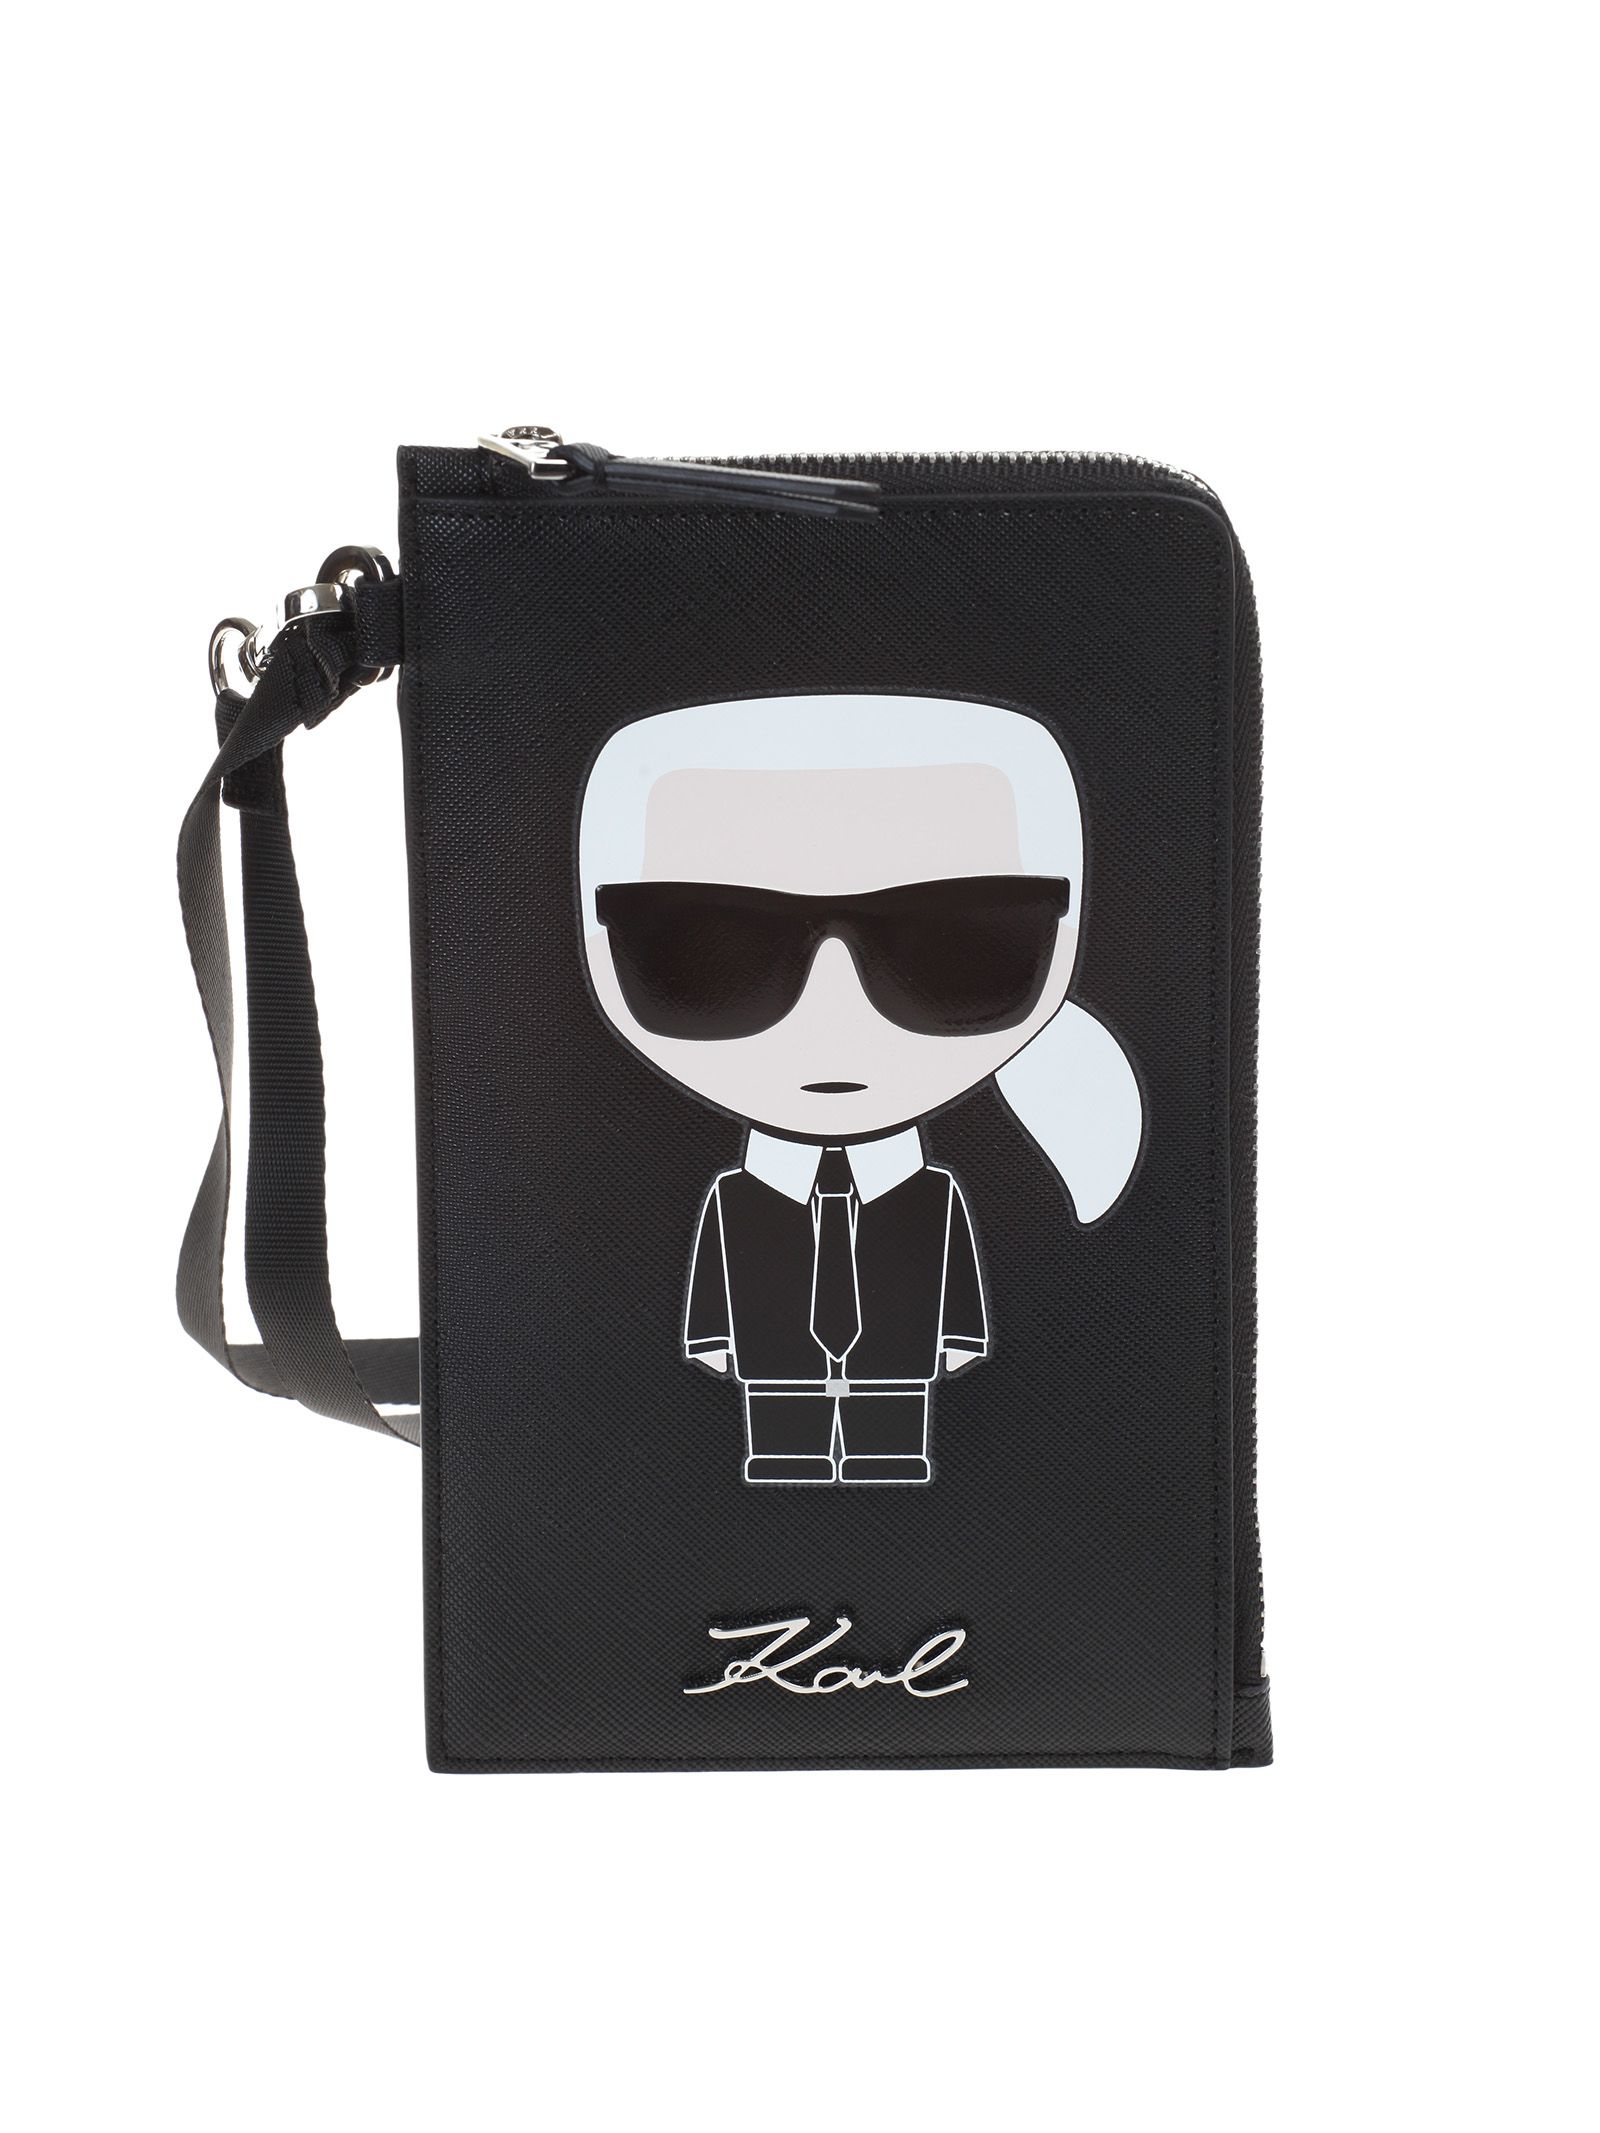 Karl Lagerfeld Karl Lagerfeld K / IKONIK support by phone - Nero ...